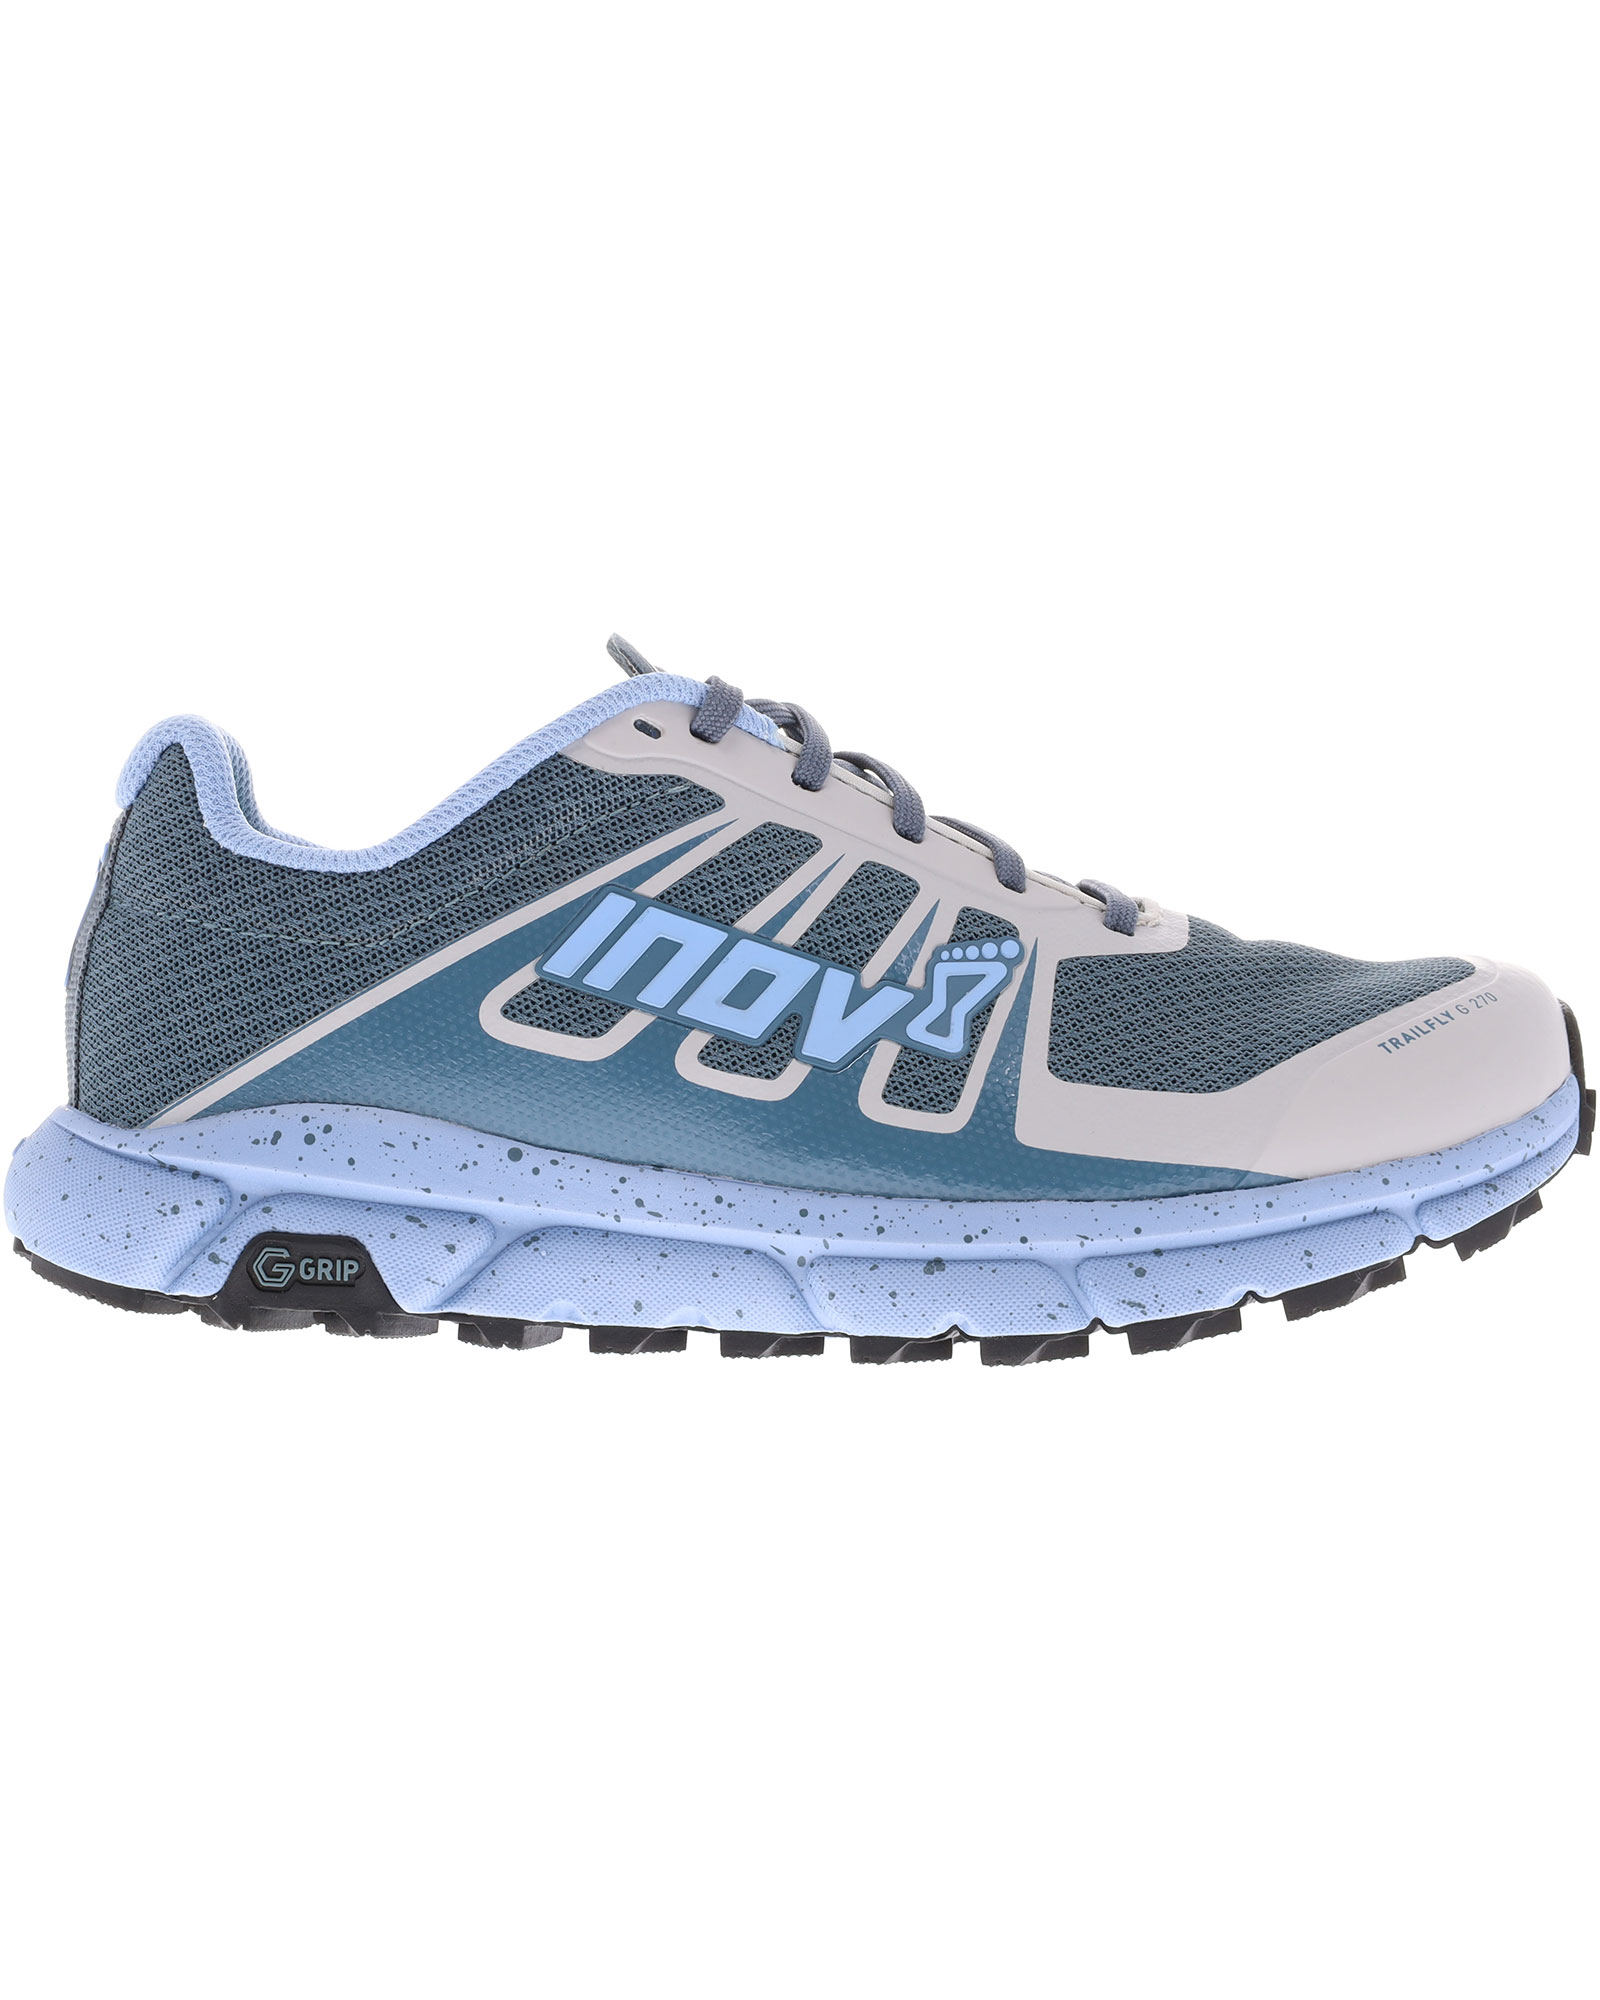 Inov 8 TrailFly G 270 V2 Women’s Trail Shoes - Blue/Grey UK 6.5